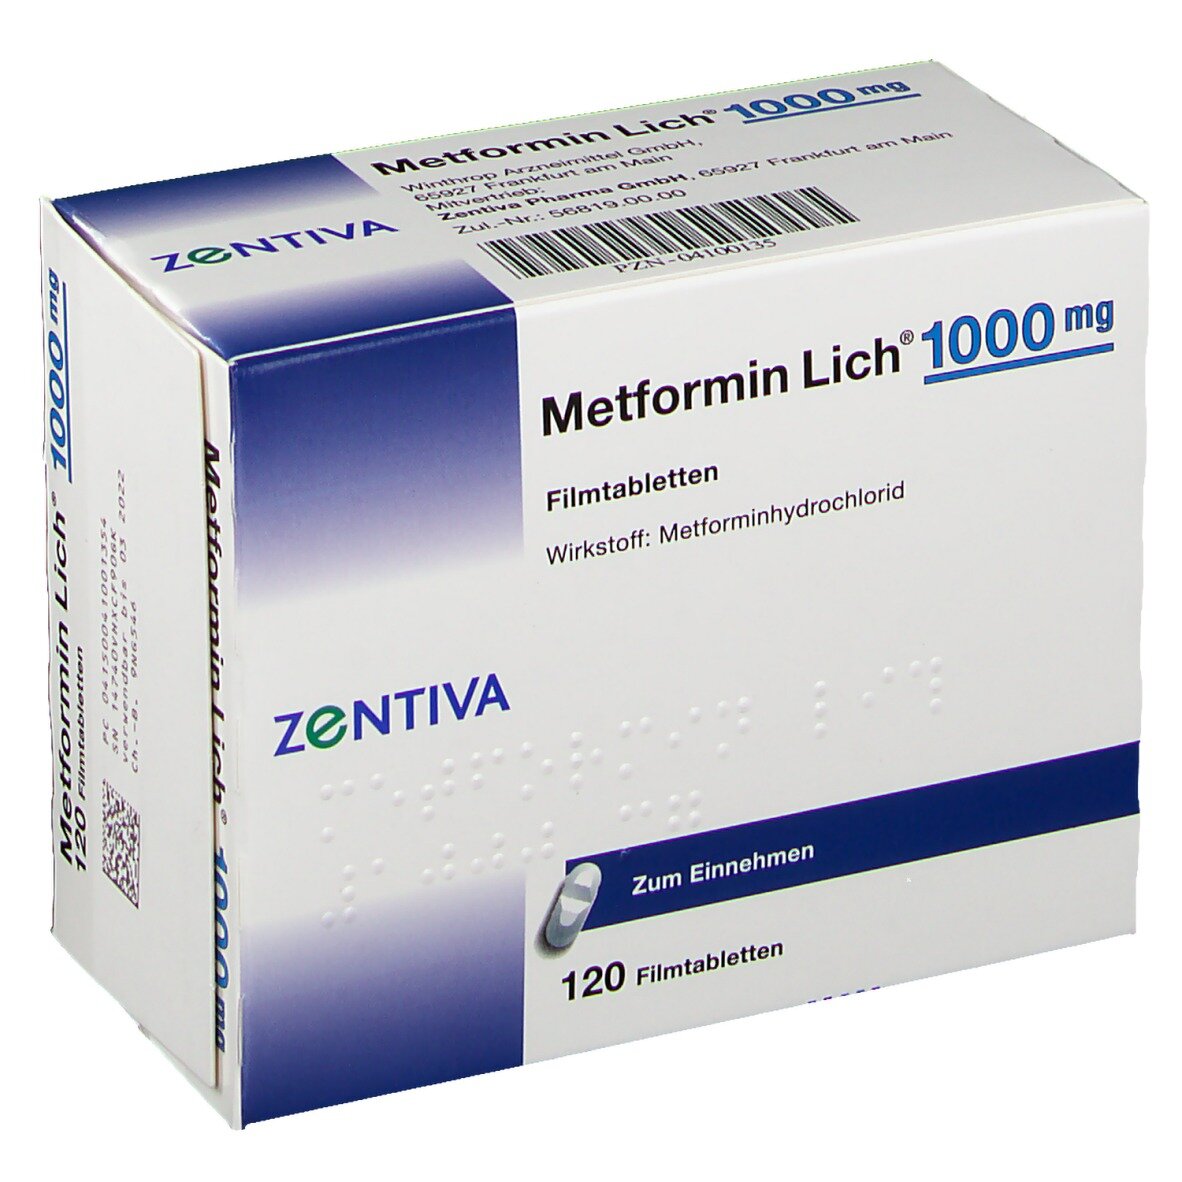 Метформин производители отзывы. Метформин 500. Метформин 500 мг синяя упаковка. Метформин 1000. Метформин 1000 мг.